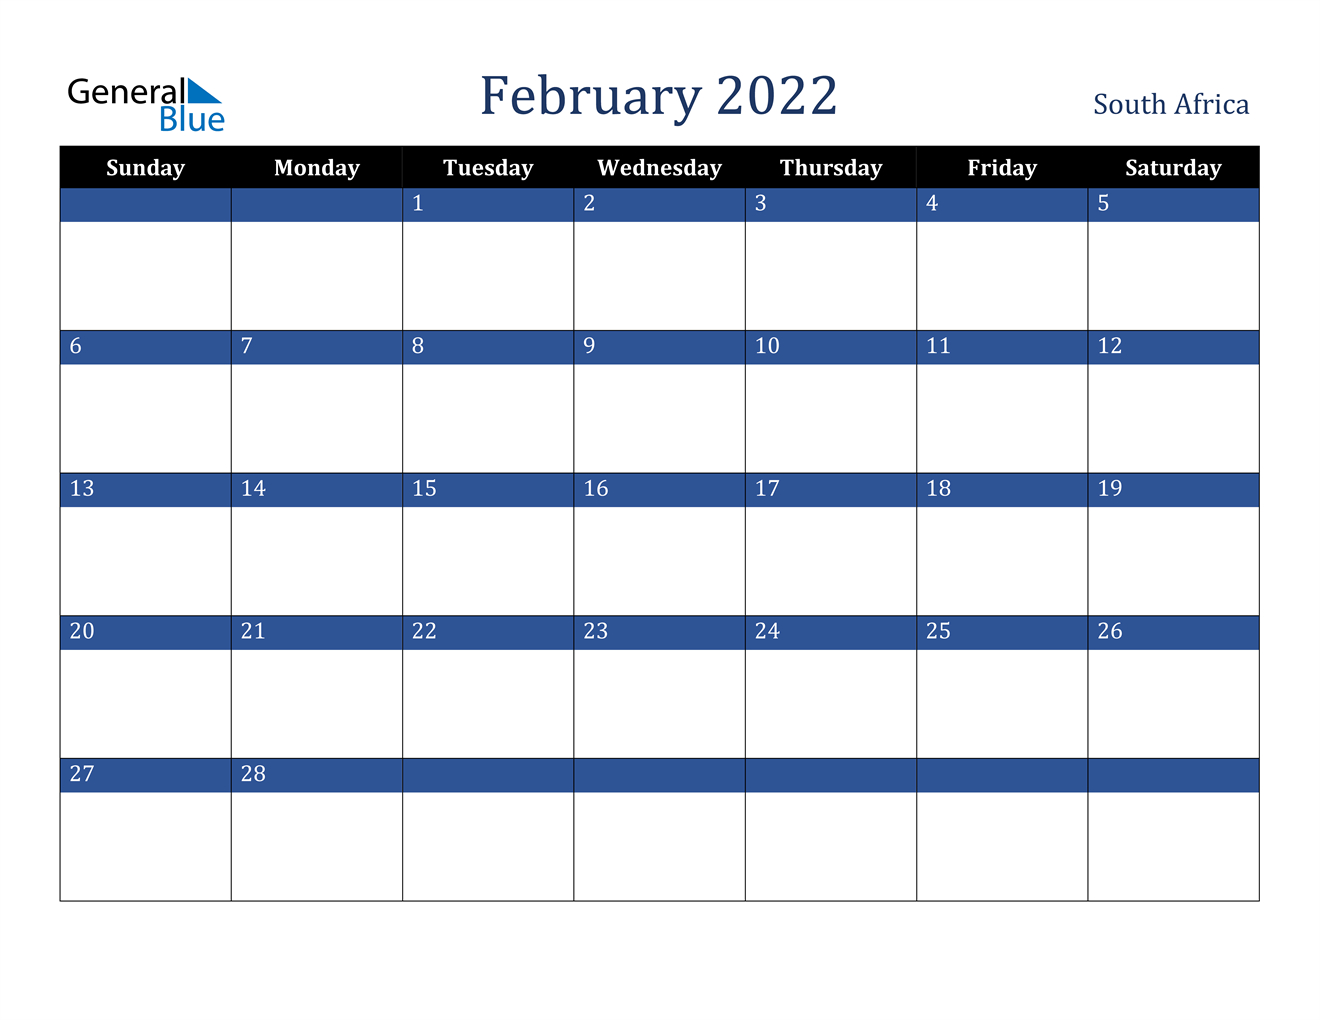 February 2022 Calendar - South Africa